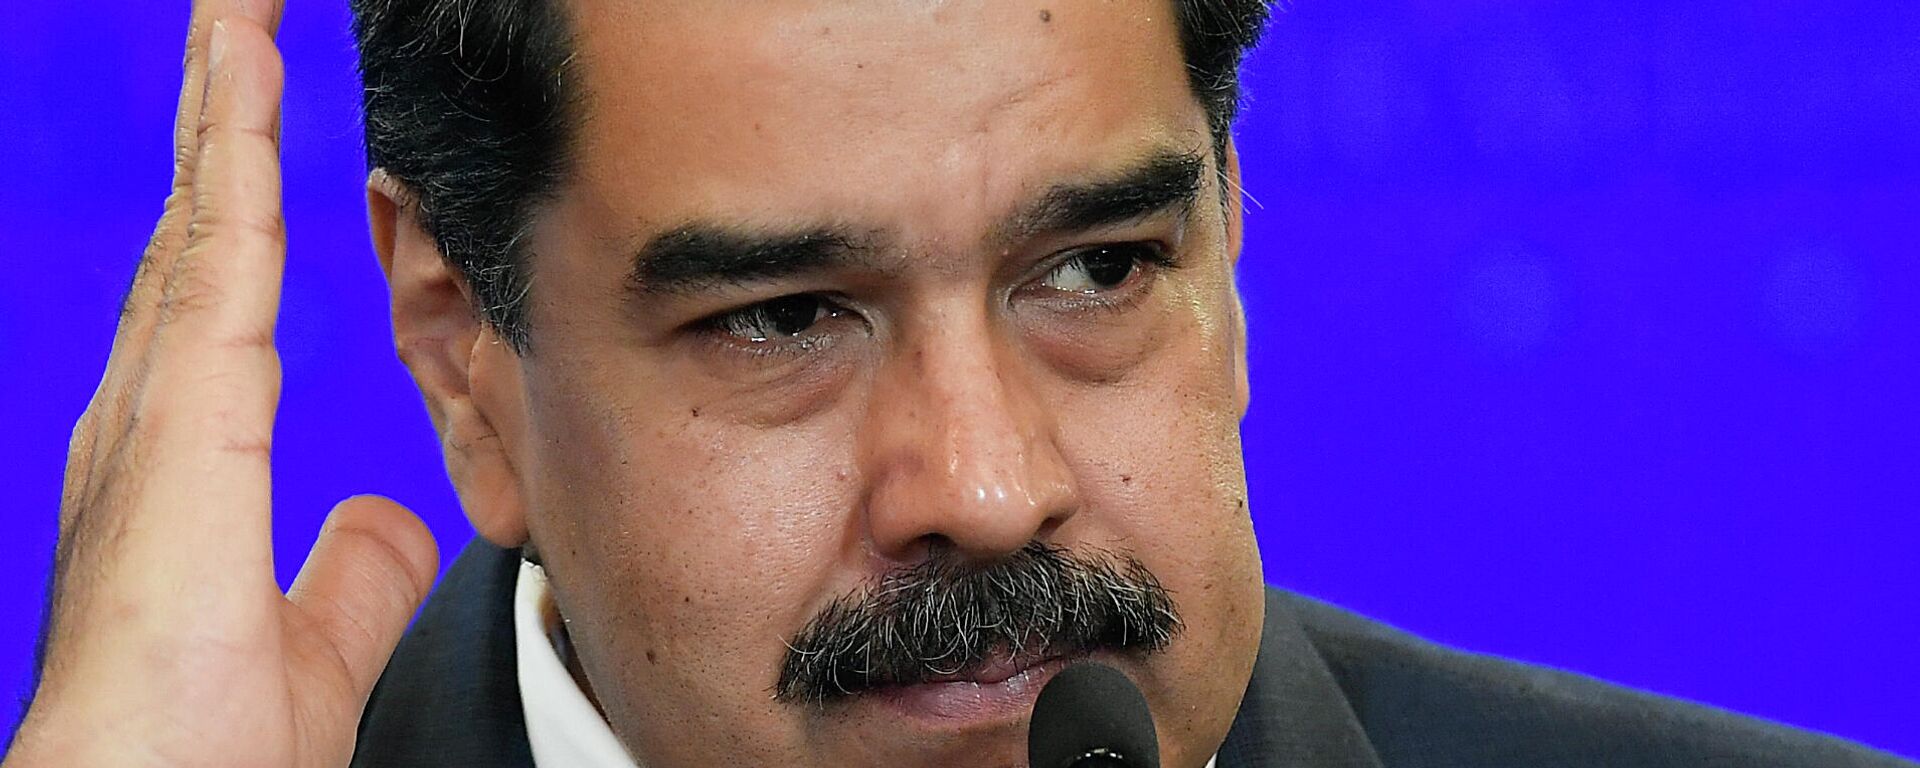 Nicolás Maduro, presidente de Venezuela - Sputnik Mundo, 1920, 03.05.2021